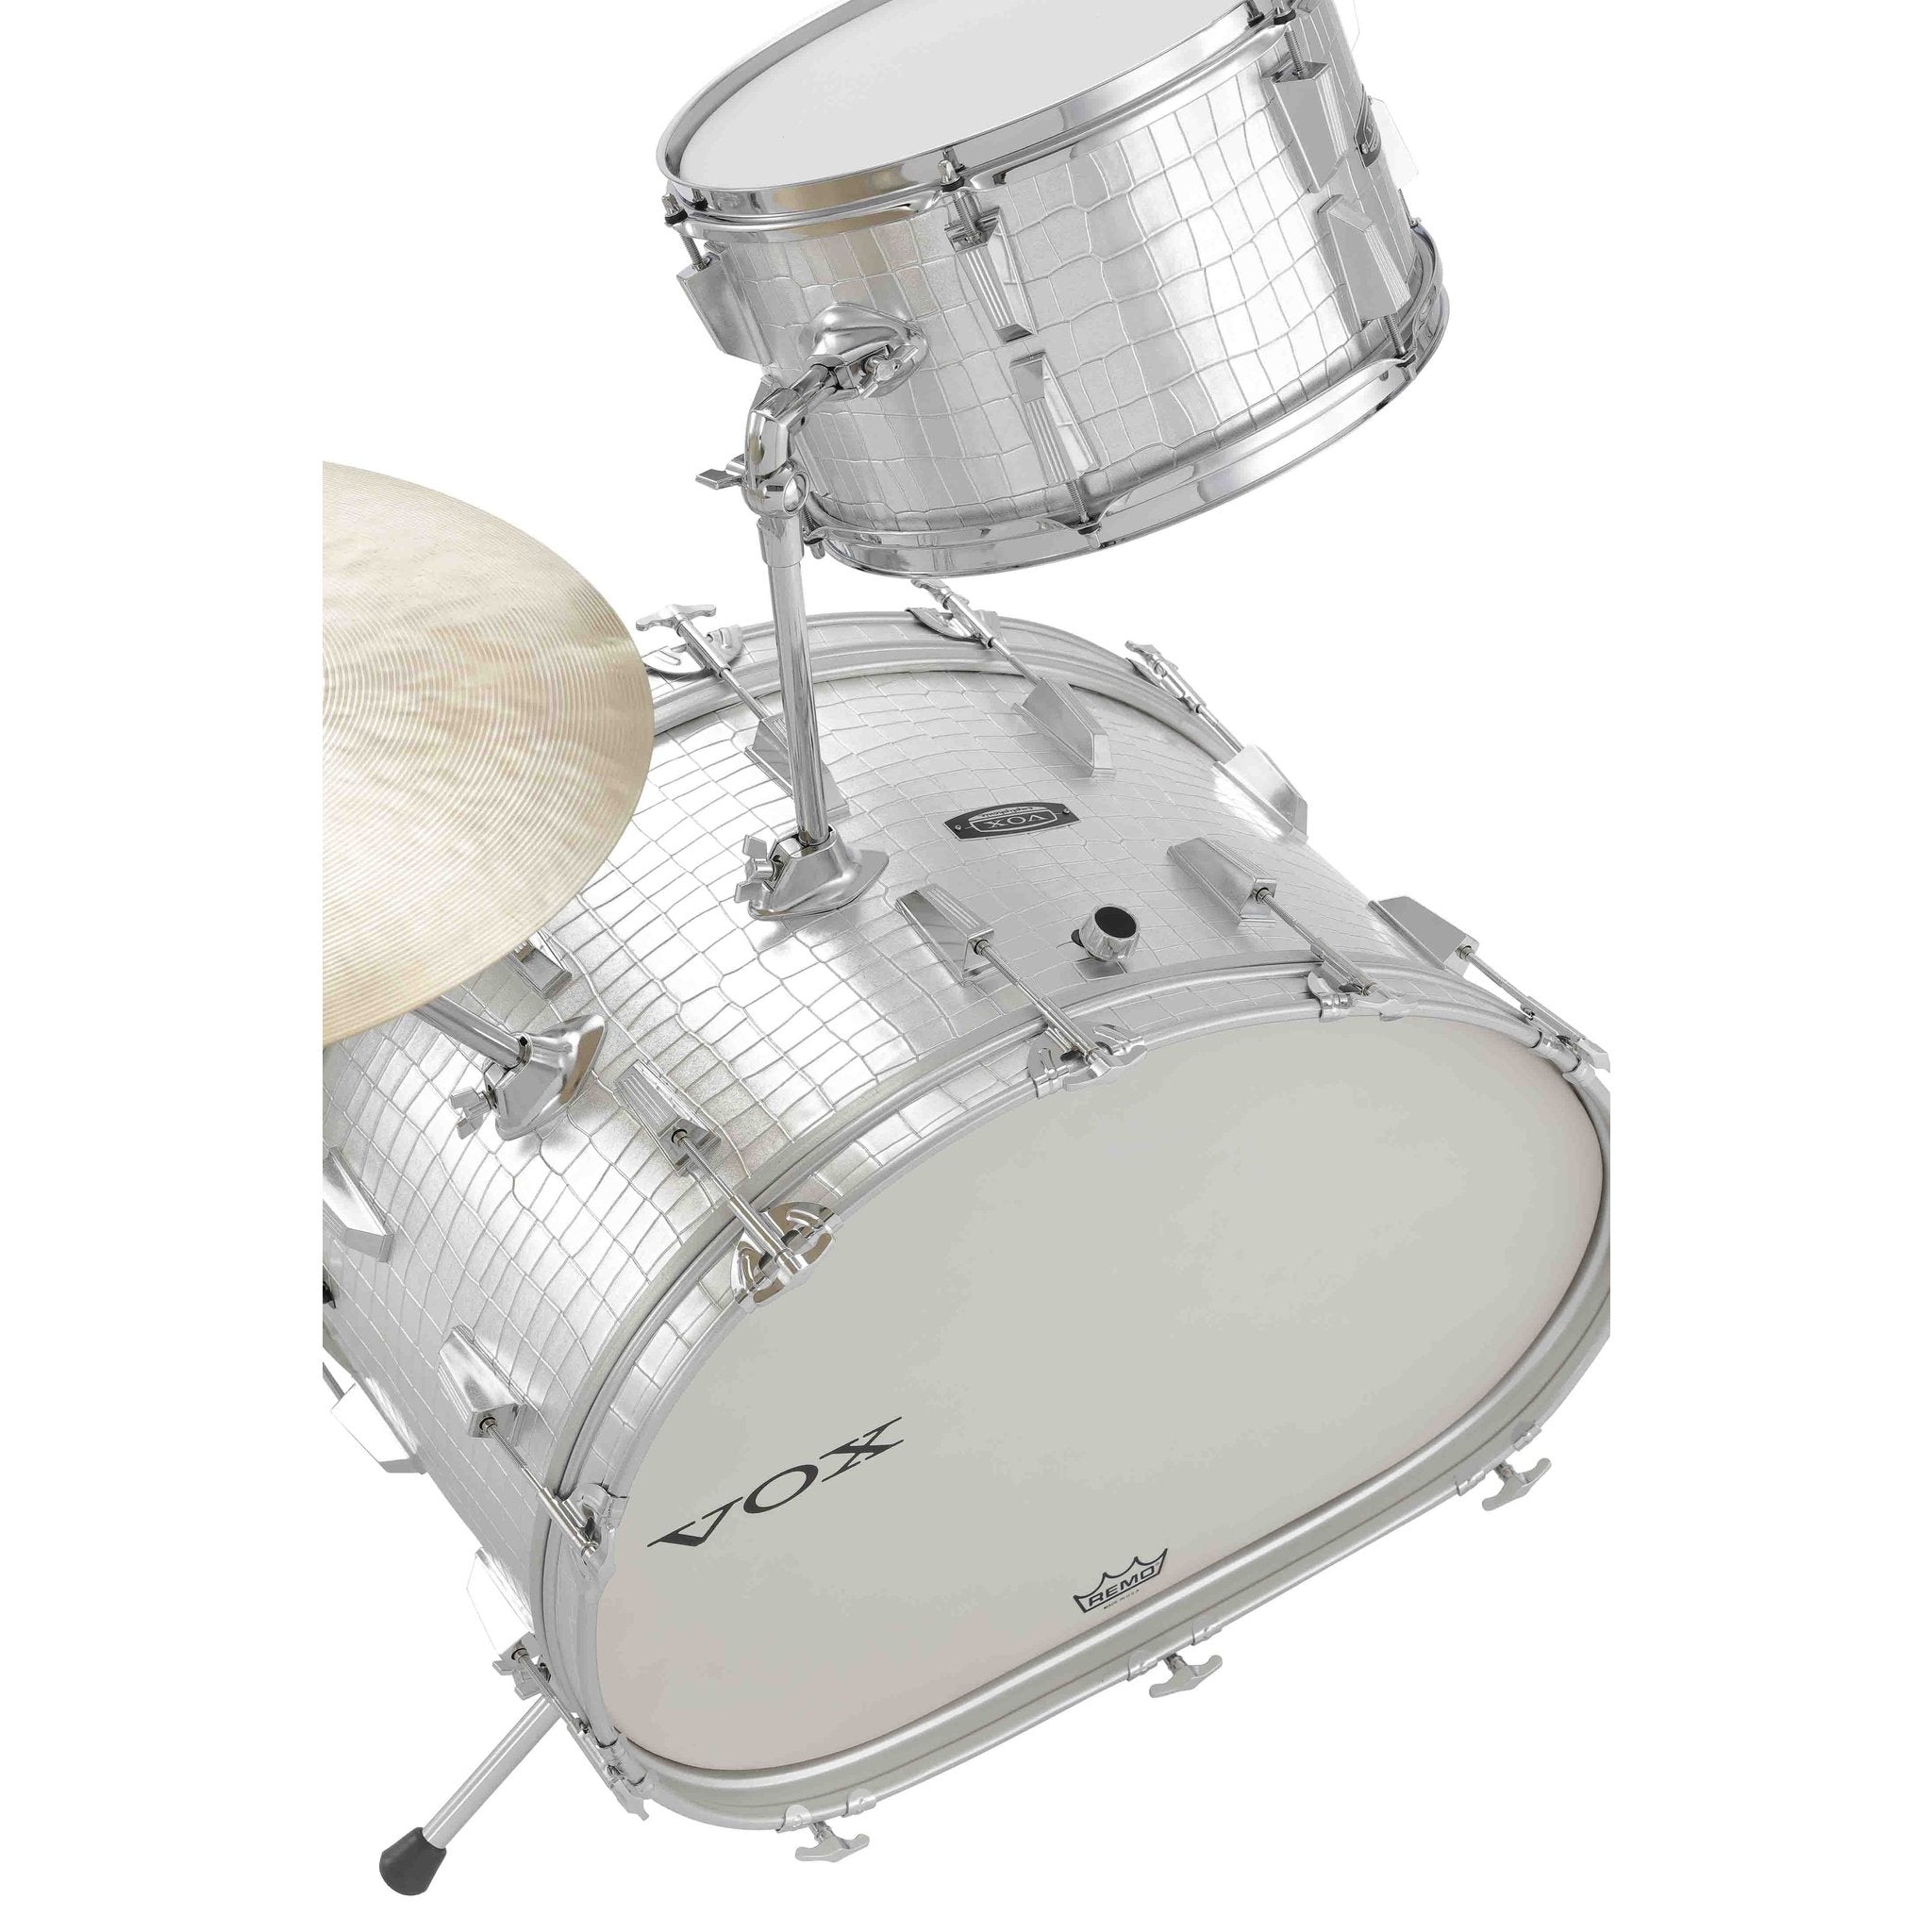 Vox Telstar Drum Kit 7